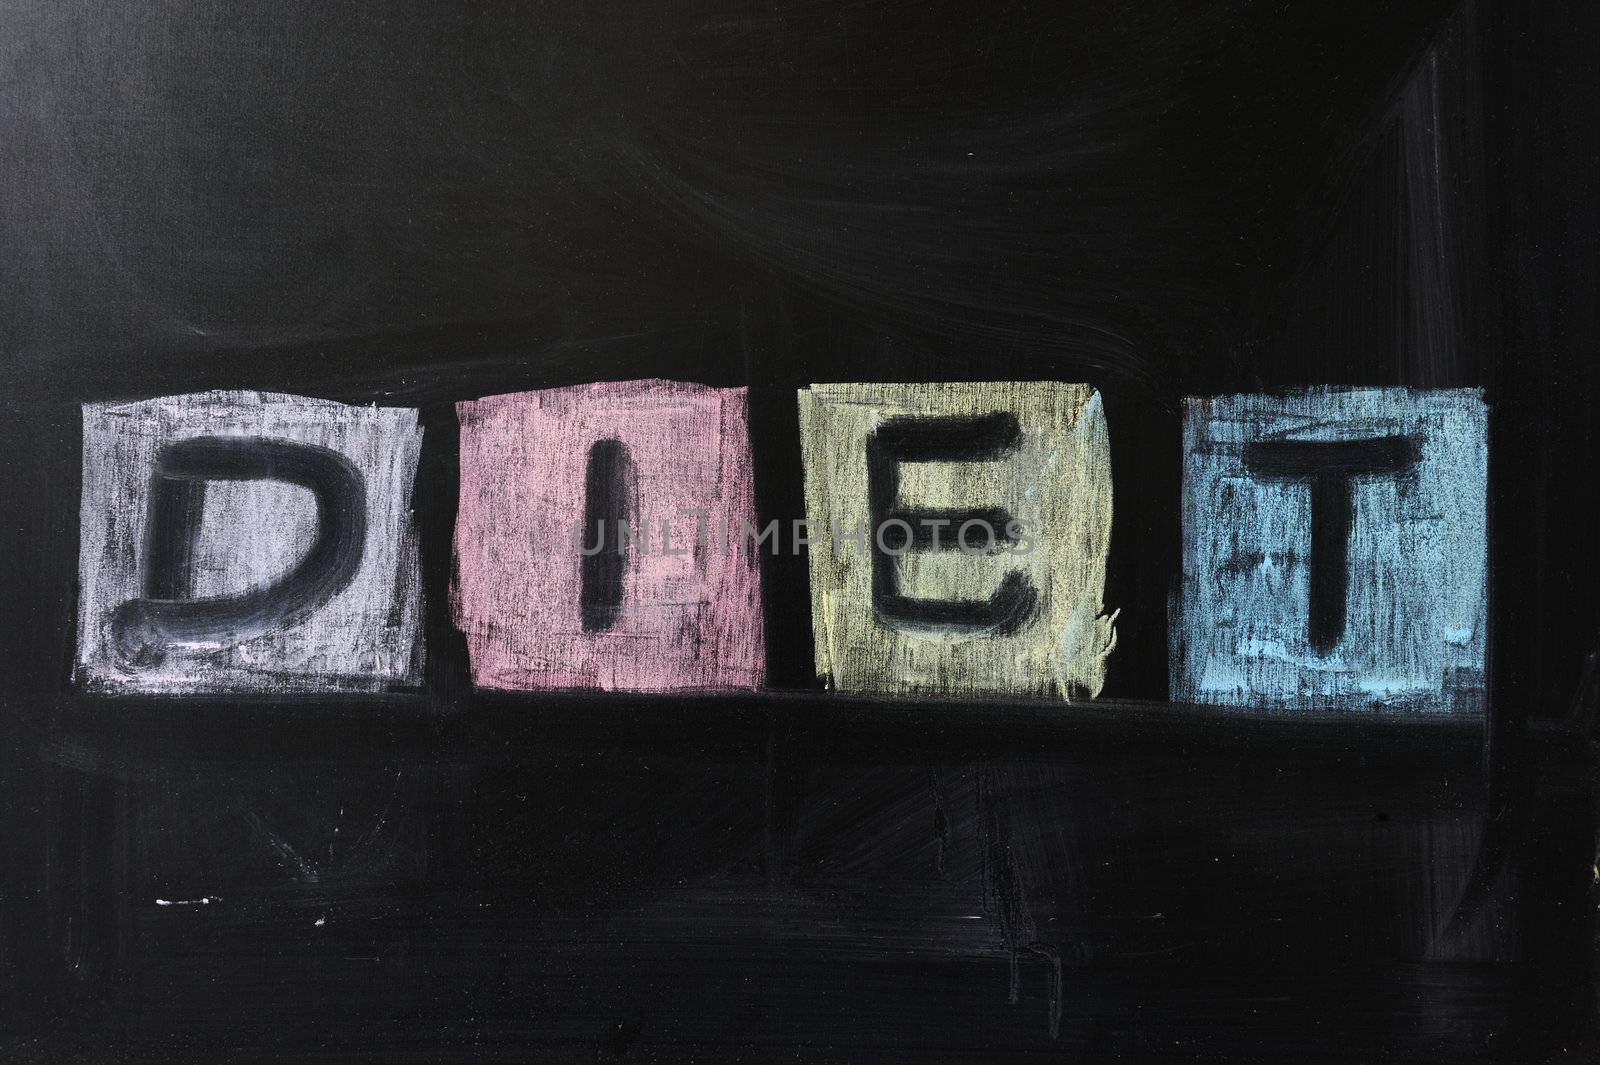 Chalk drawing - "Diet" word written on chalkboard